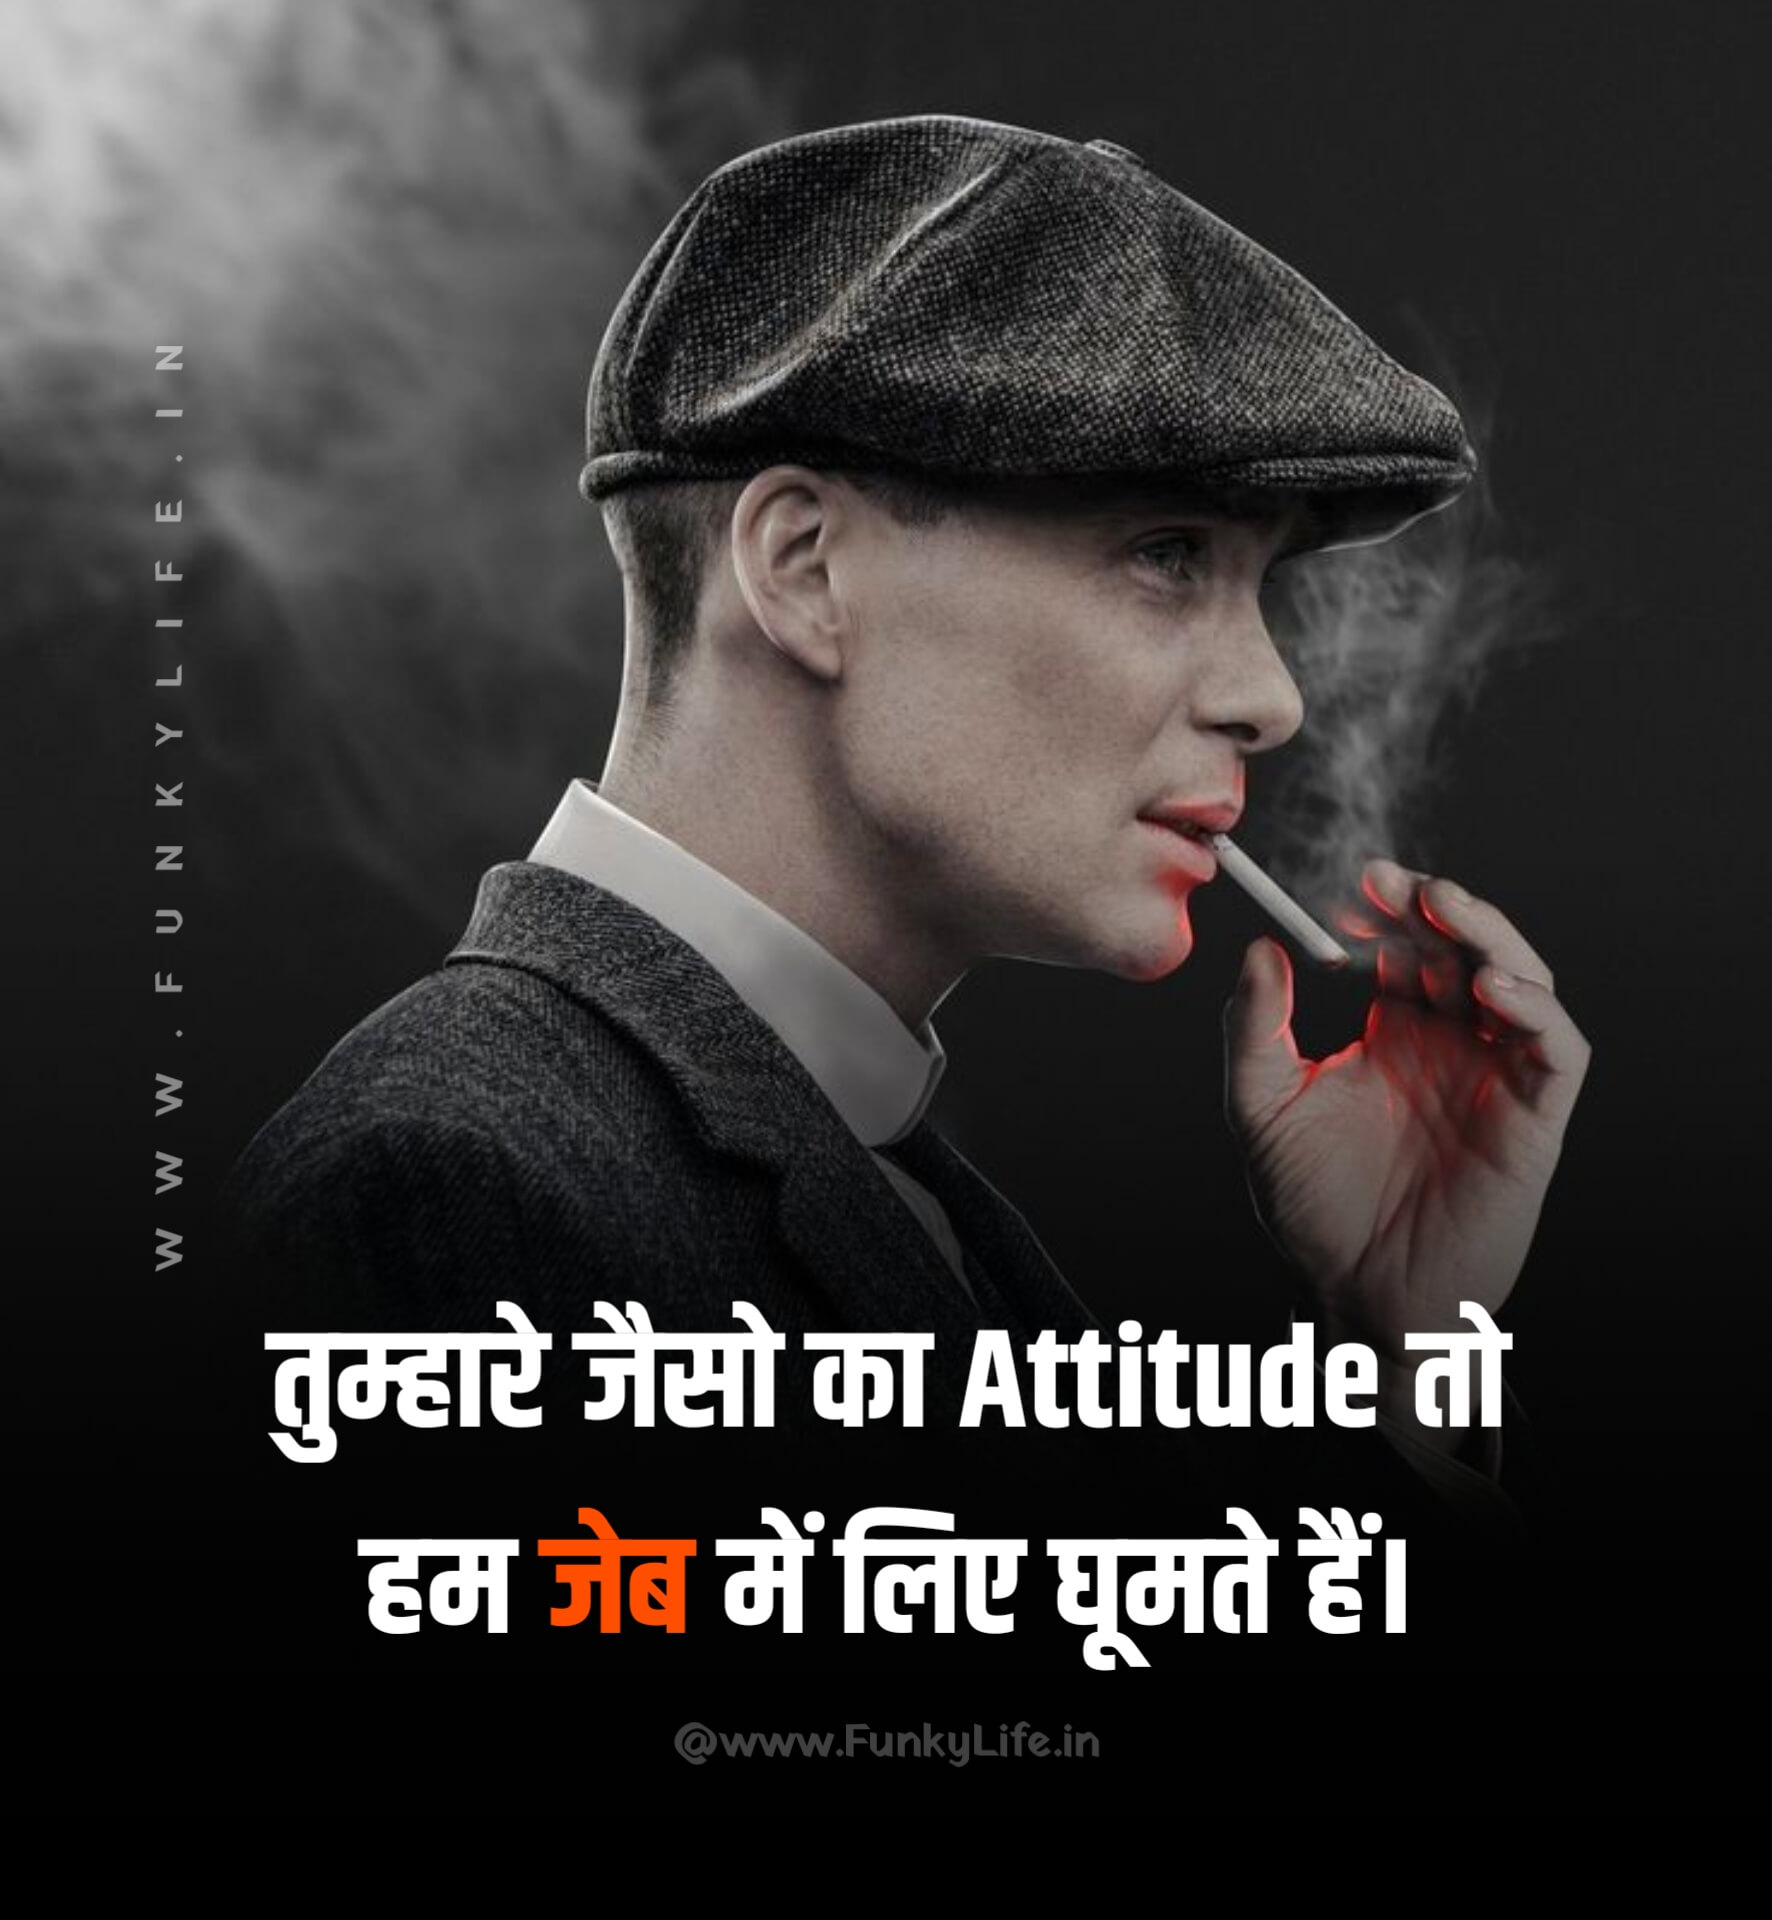 2 Line Attitude Status in Hindi